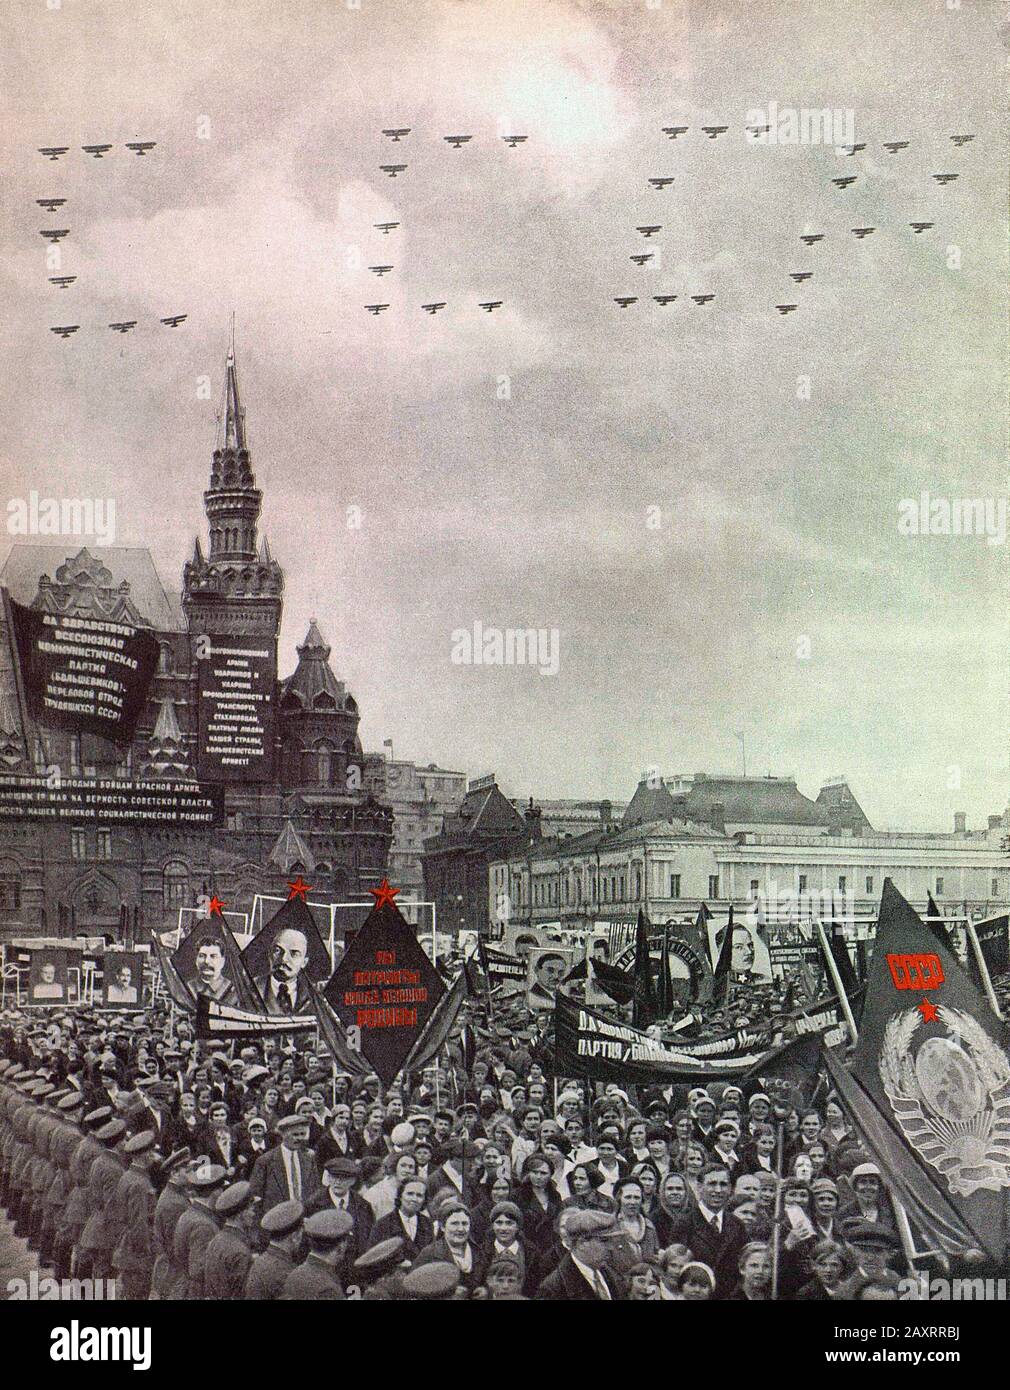 Armée Rouge. Du livre de propagande soviétique de 1937. Manifestation du peuple soviétique sur la place Rouge à Moscou. Banque D'Images